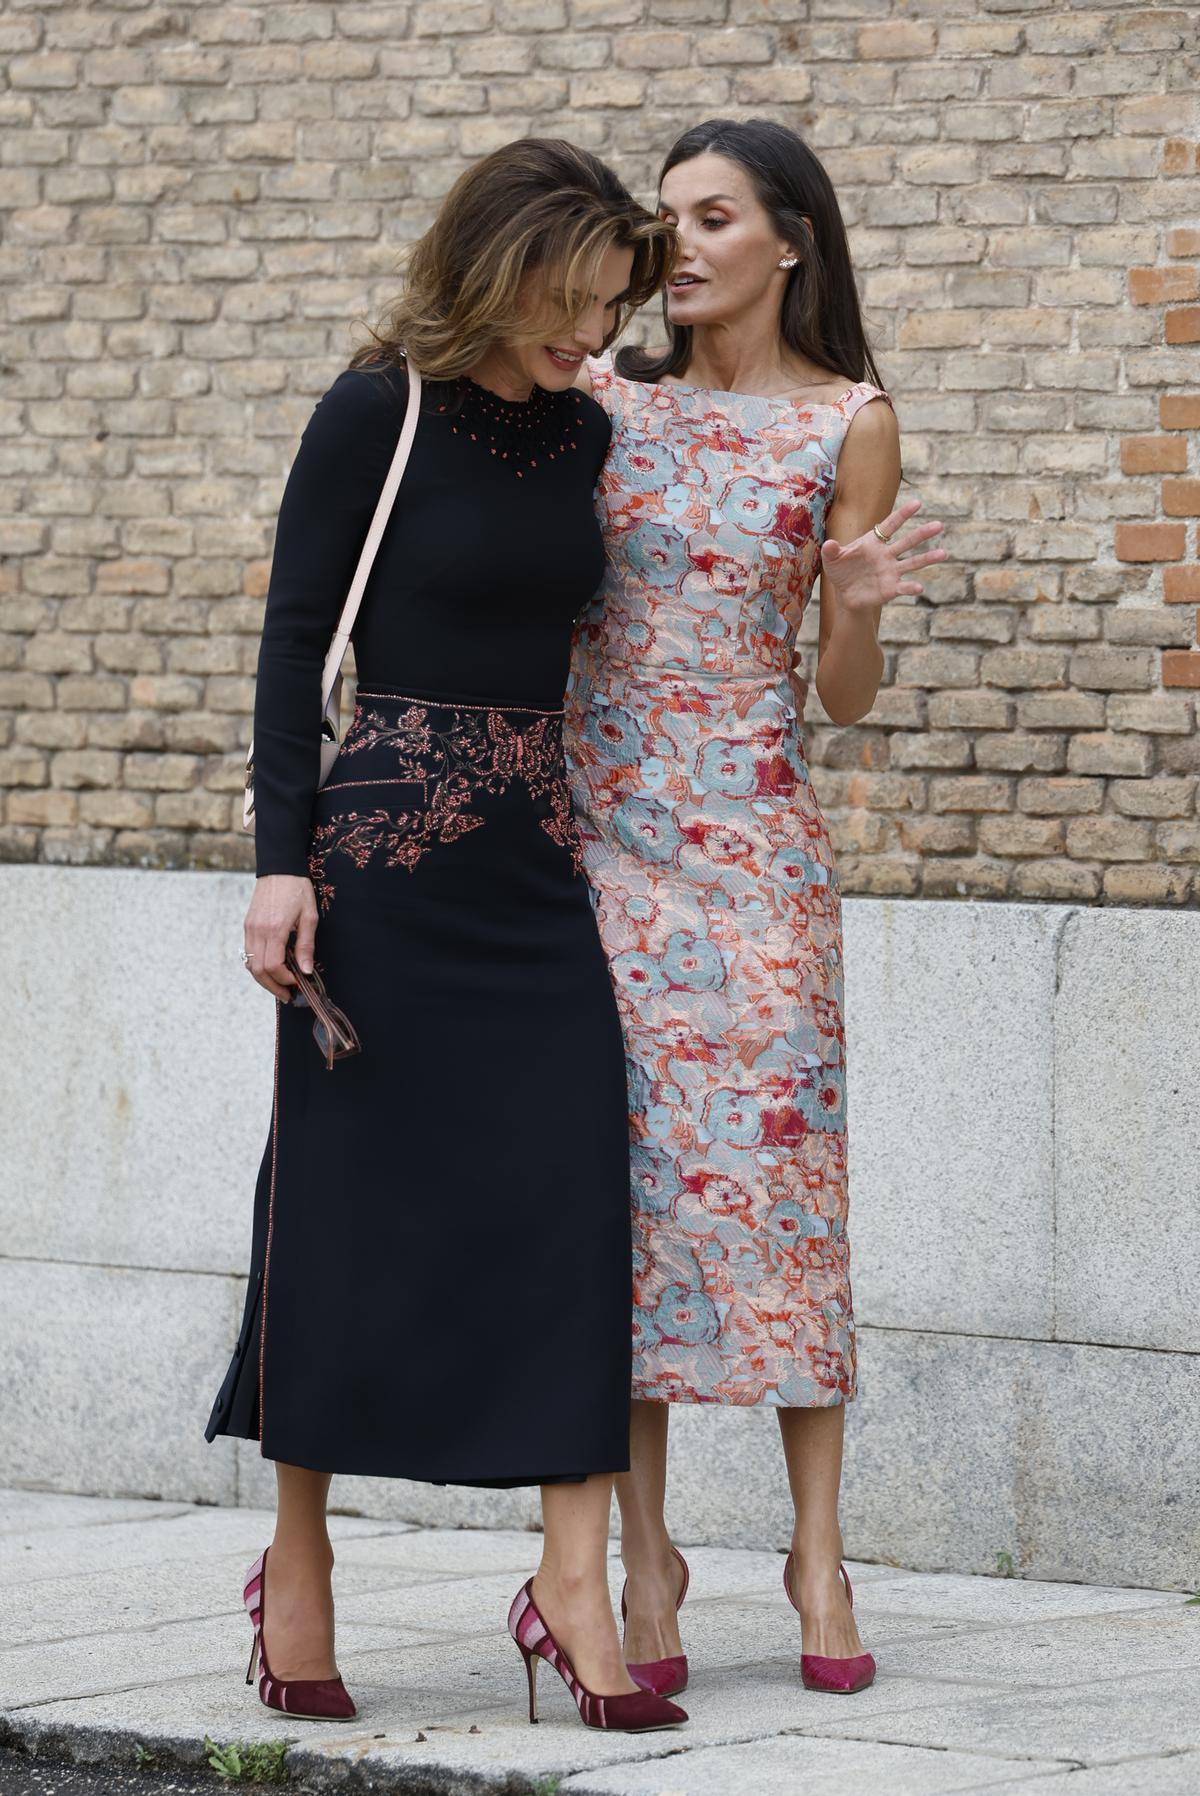 Letizia y Rania de Jordania, encuentro en Madrid